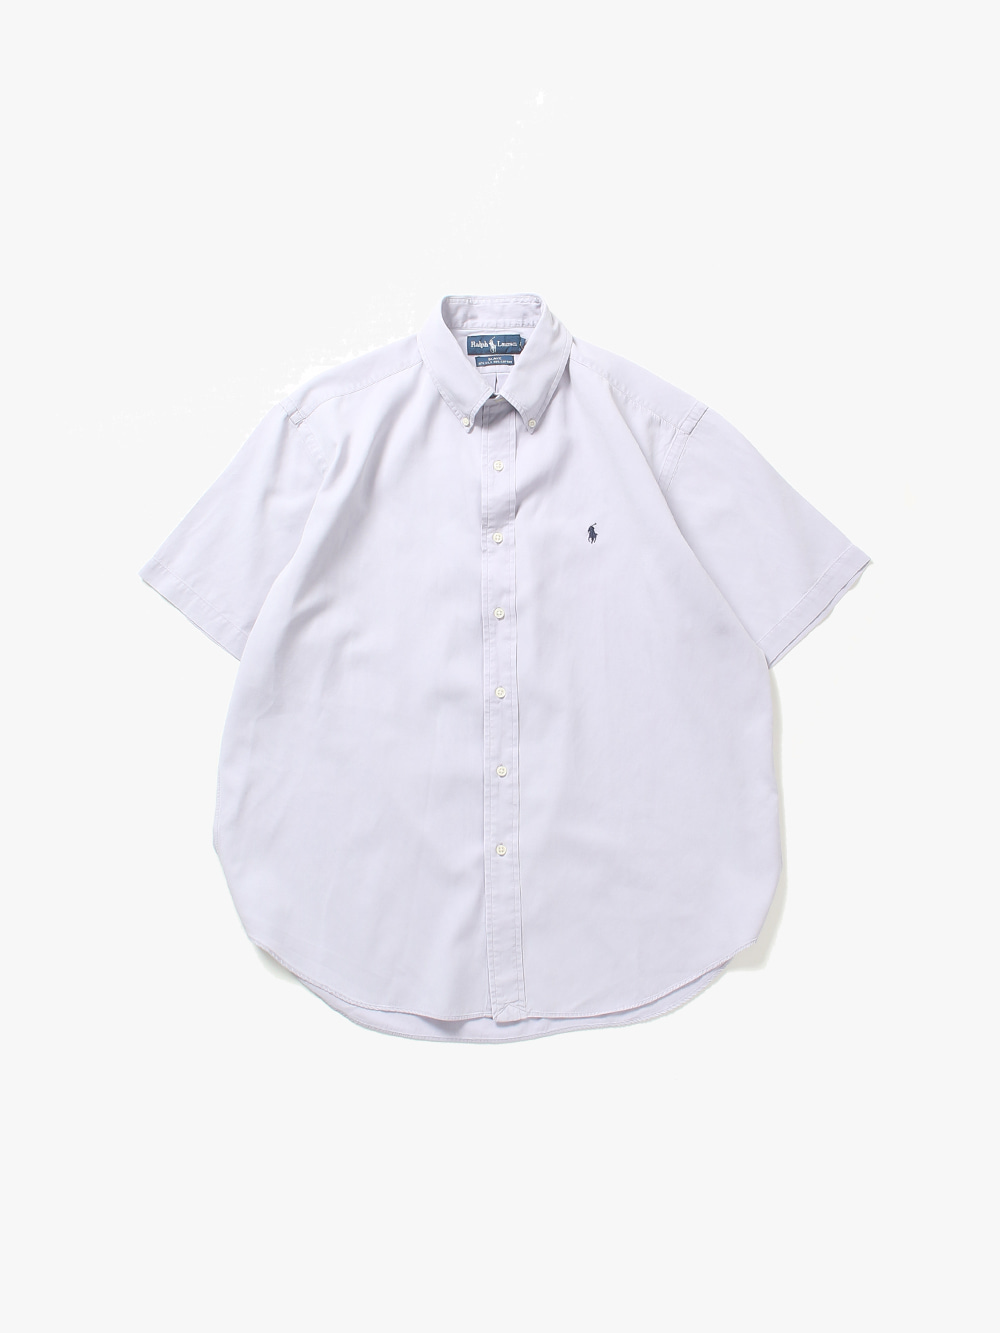 [ L ] Polo Ralph Lauren 1/2 Shirt (6467)